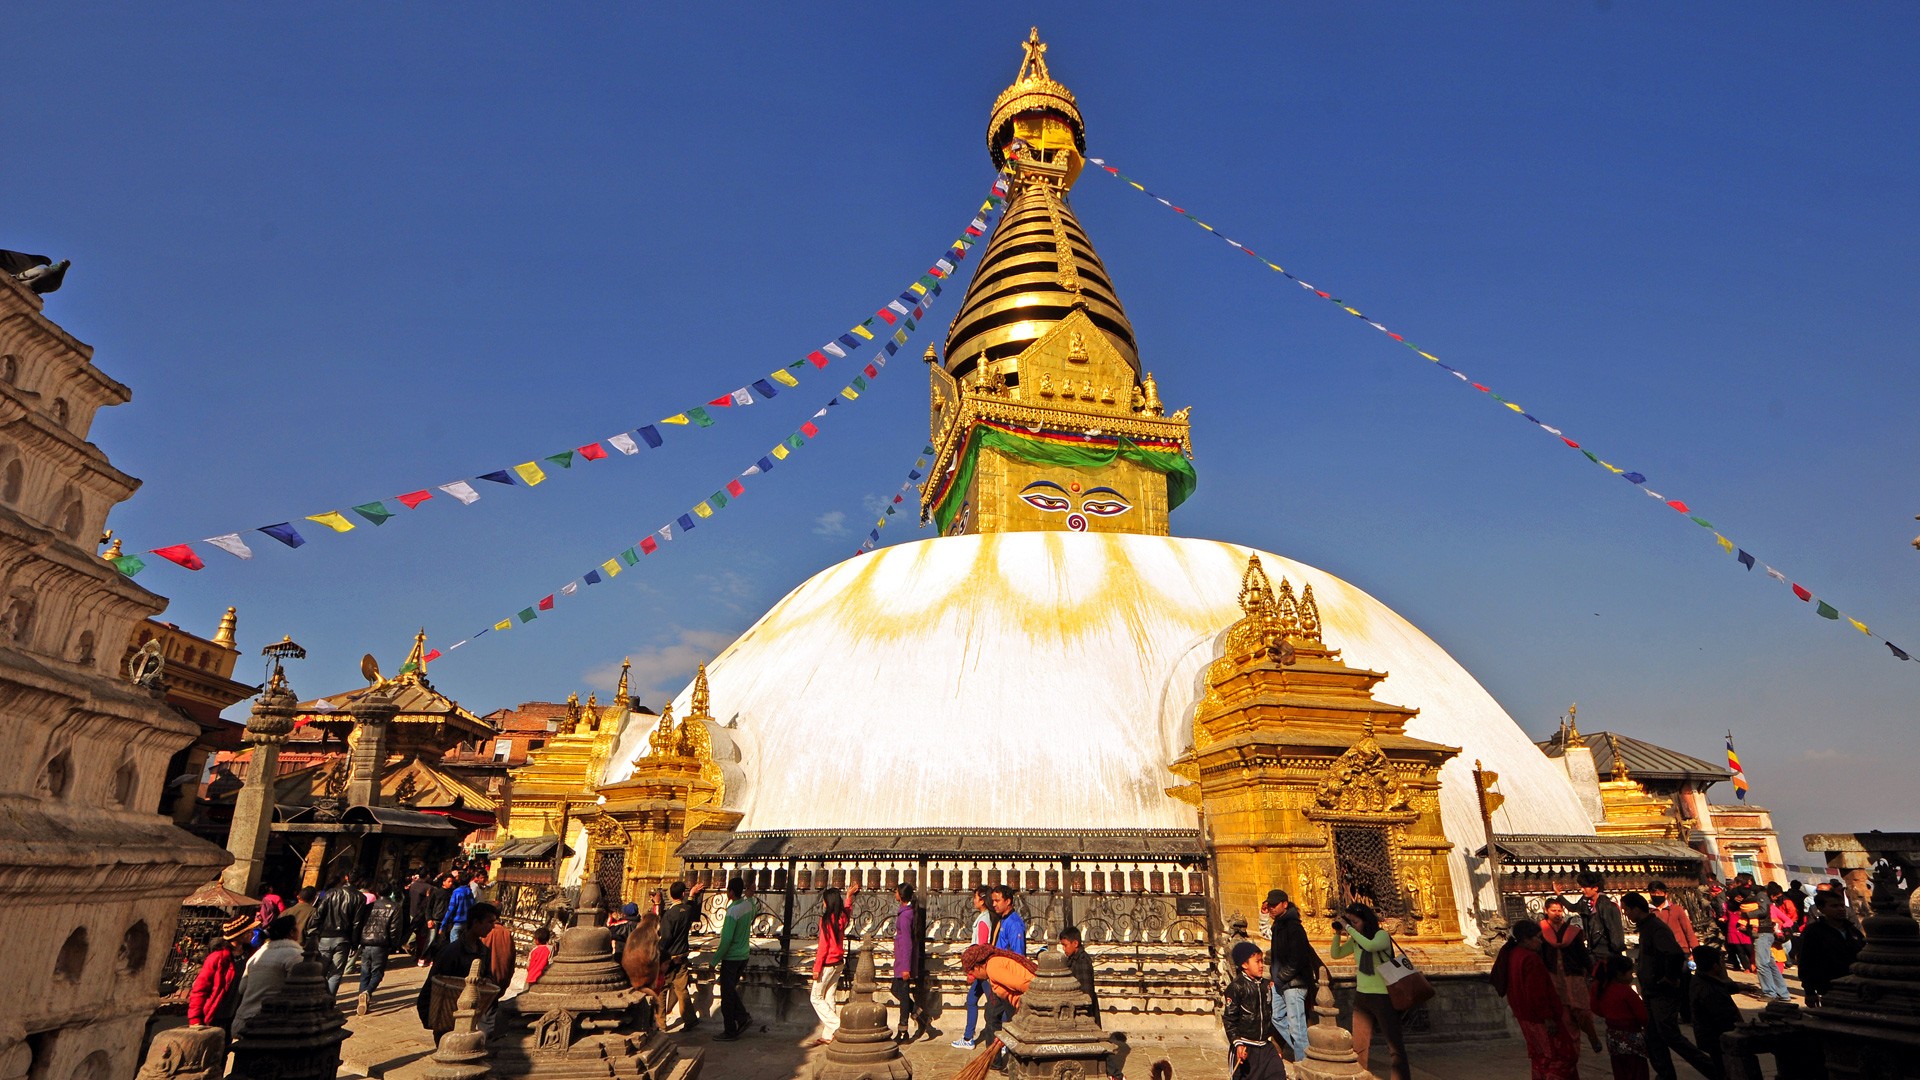 Himalaya Kailash Travels & Tours - Swayambhunath , HD Wallpaper & Backgrounds